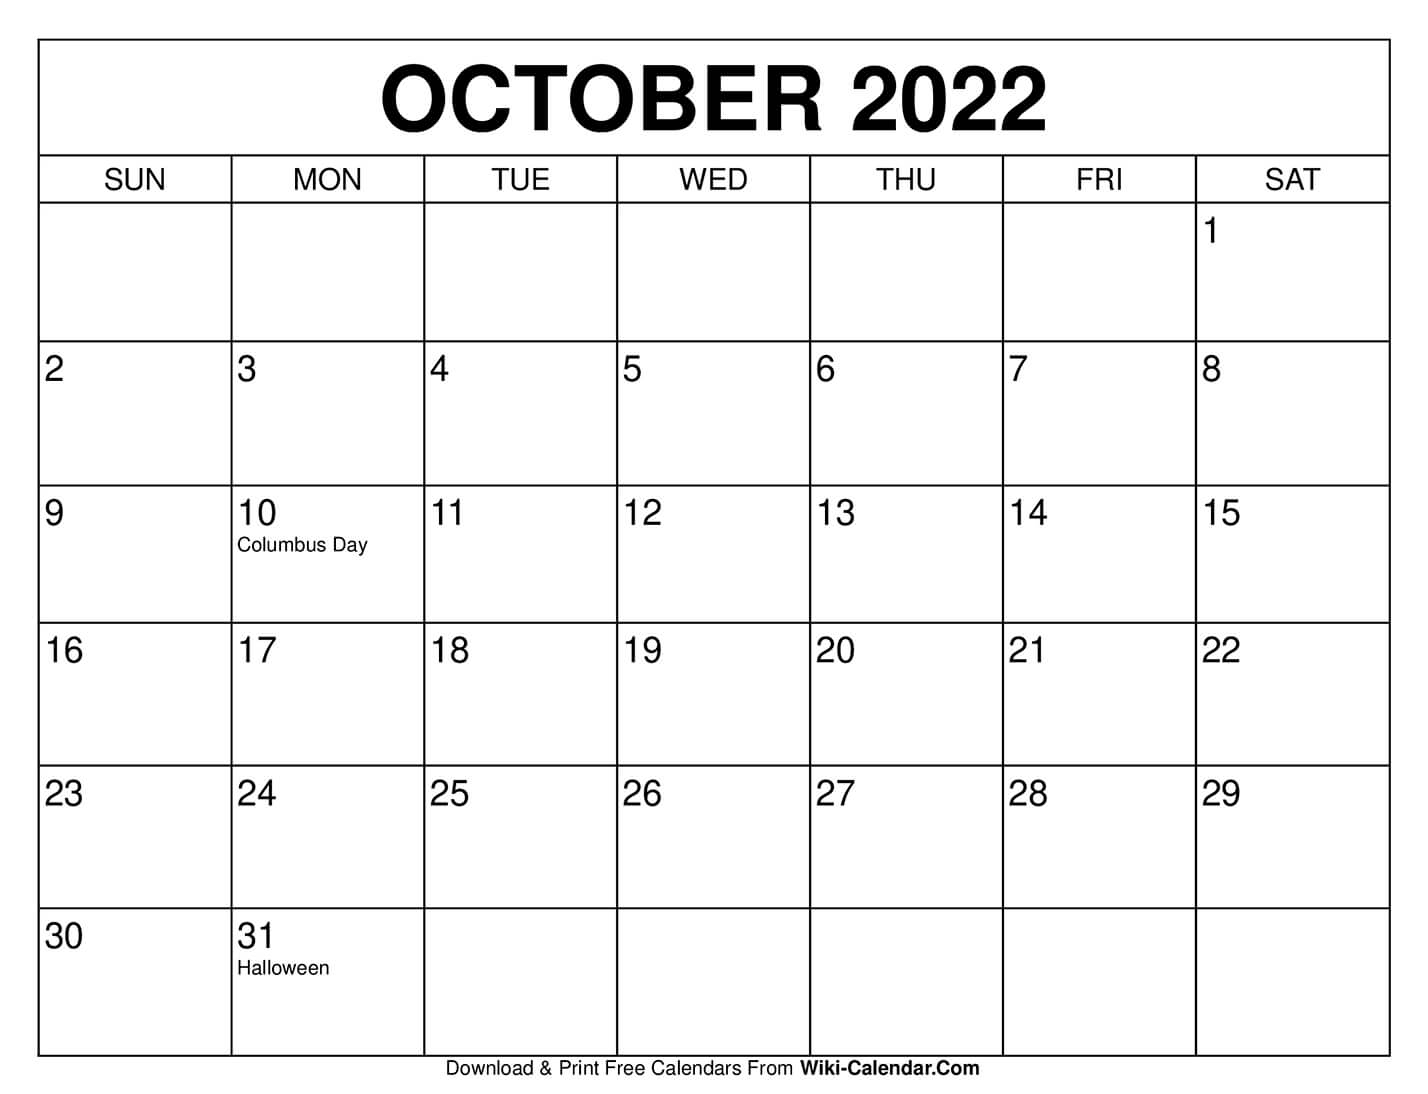 October 2022 Printable Calendar - Calendar 2022